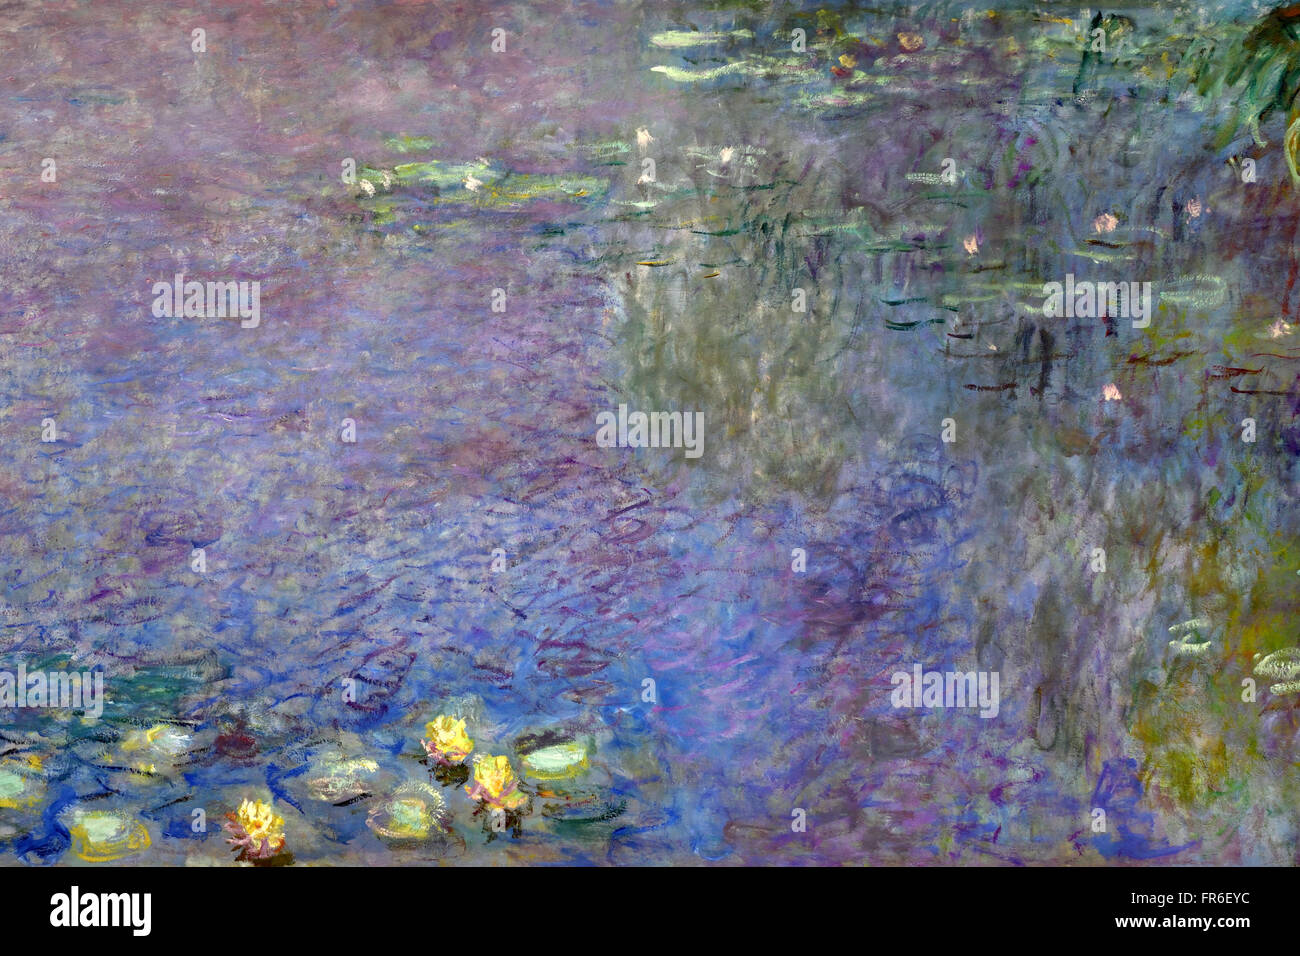 Dettaglio dell'acqua la serie di Lily Nymphaea dipinta da Claude Monet 1840 – 1926 Francia Francese al Musée de l'Orangerie ( Jardin Tuileries Paris ) dipinti francesi impressionisti e post-impressionisti Francia Foto Stock